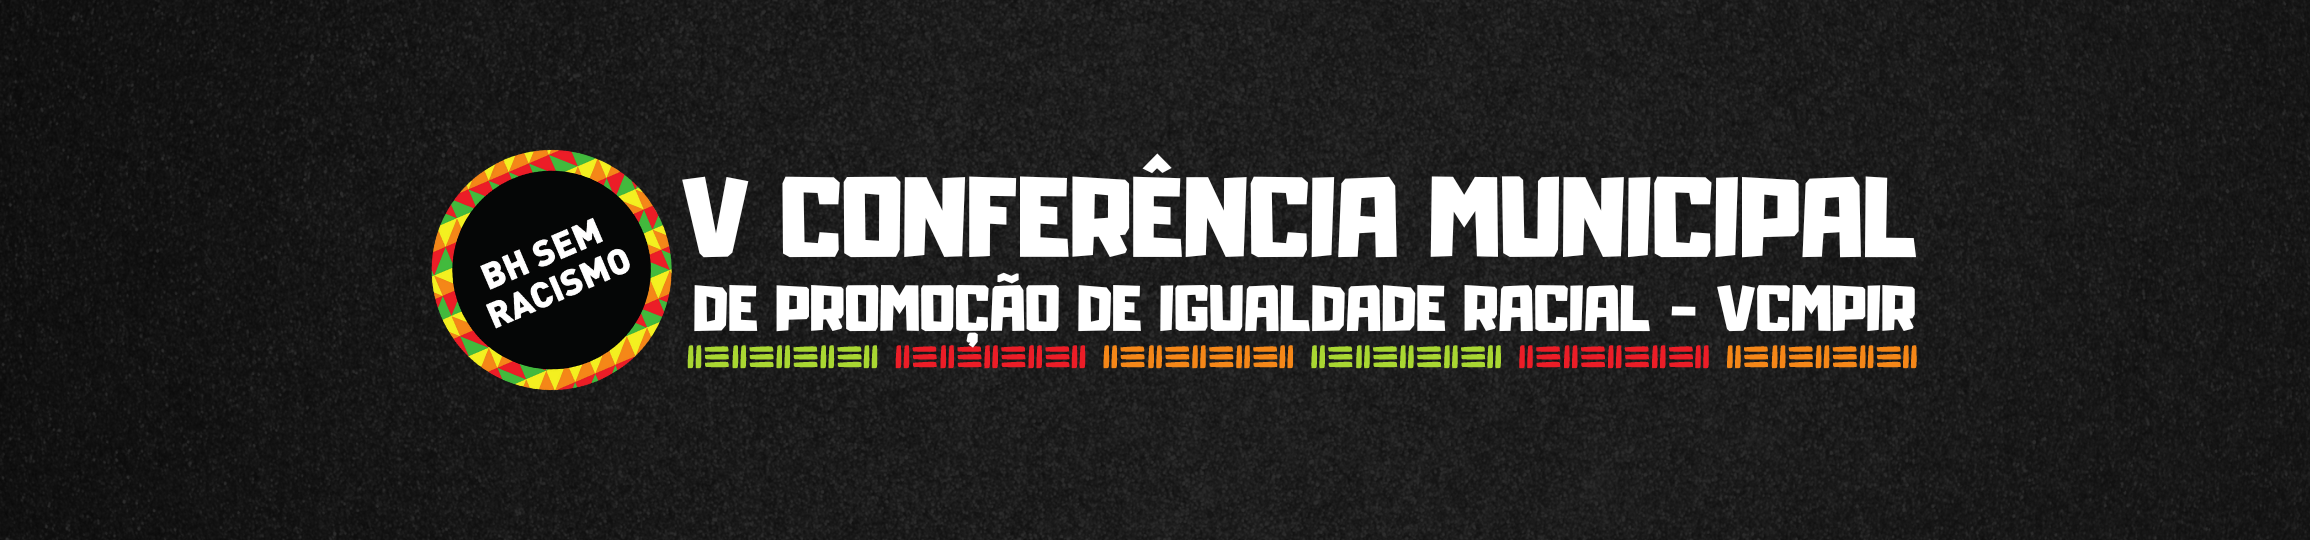 Capa Conferência Municipal de Promoção de Igualdade Racial - VCMPI - BH sem Racismo